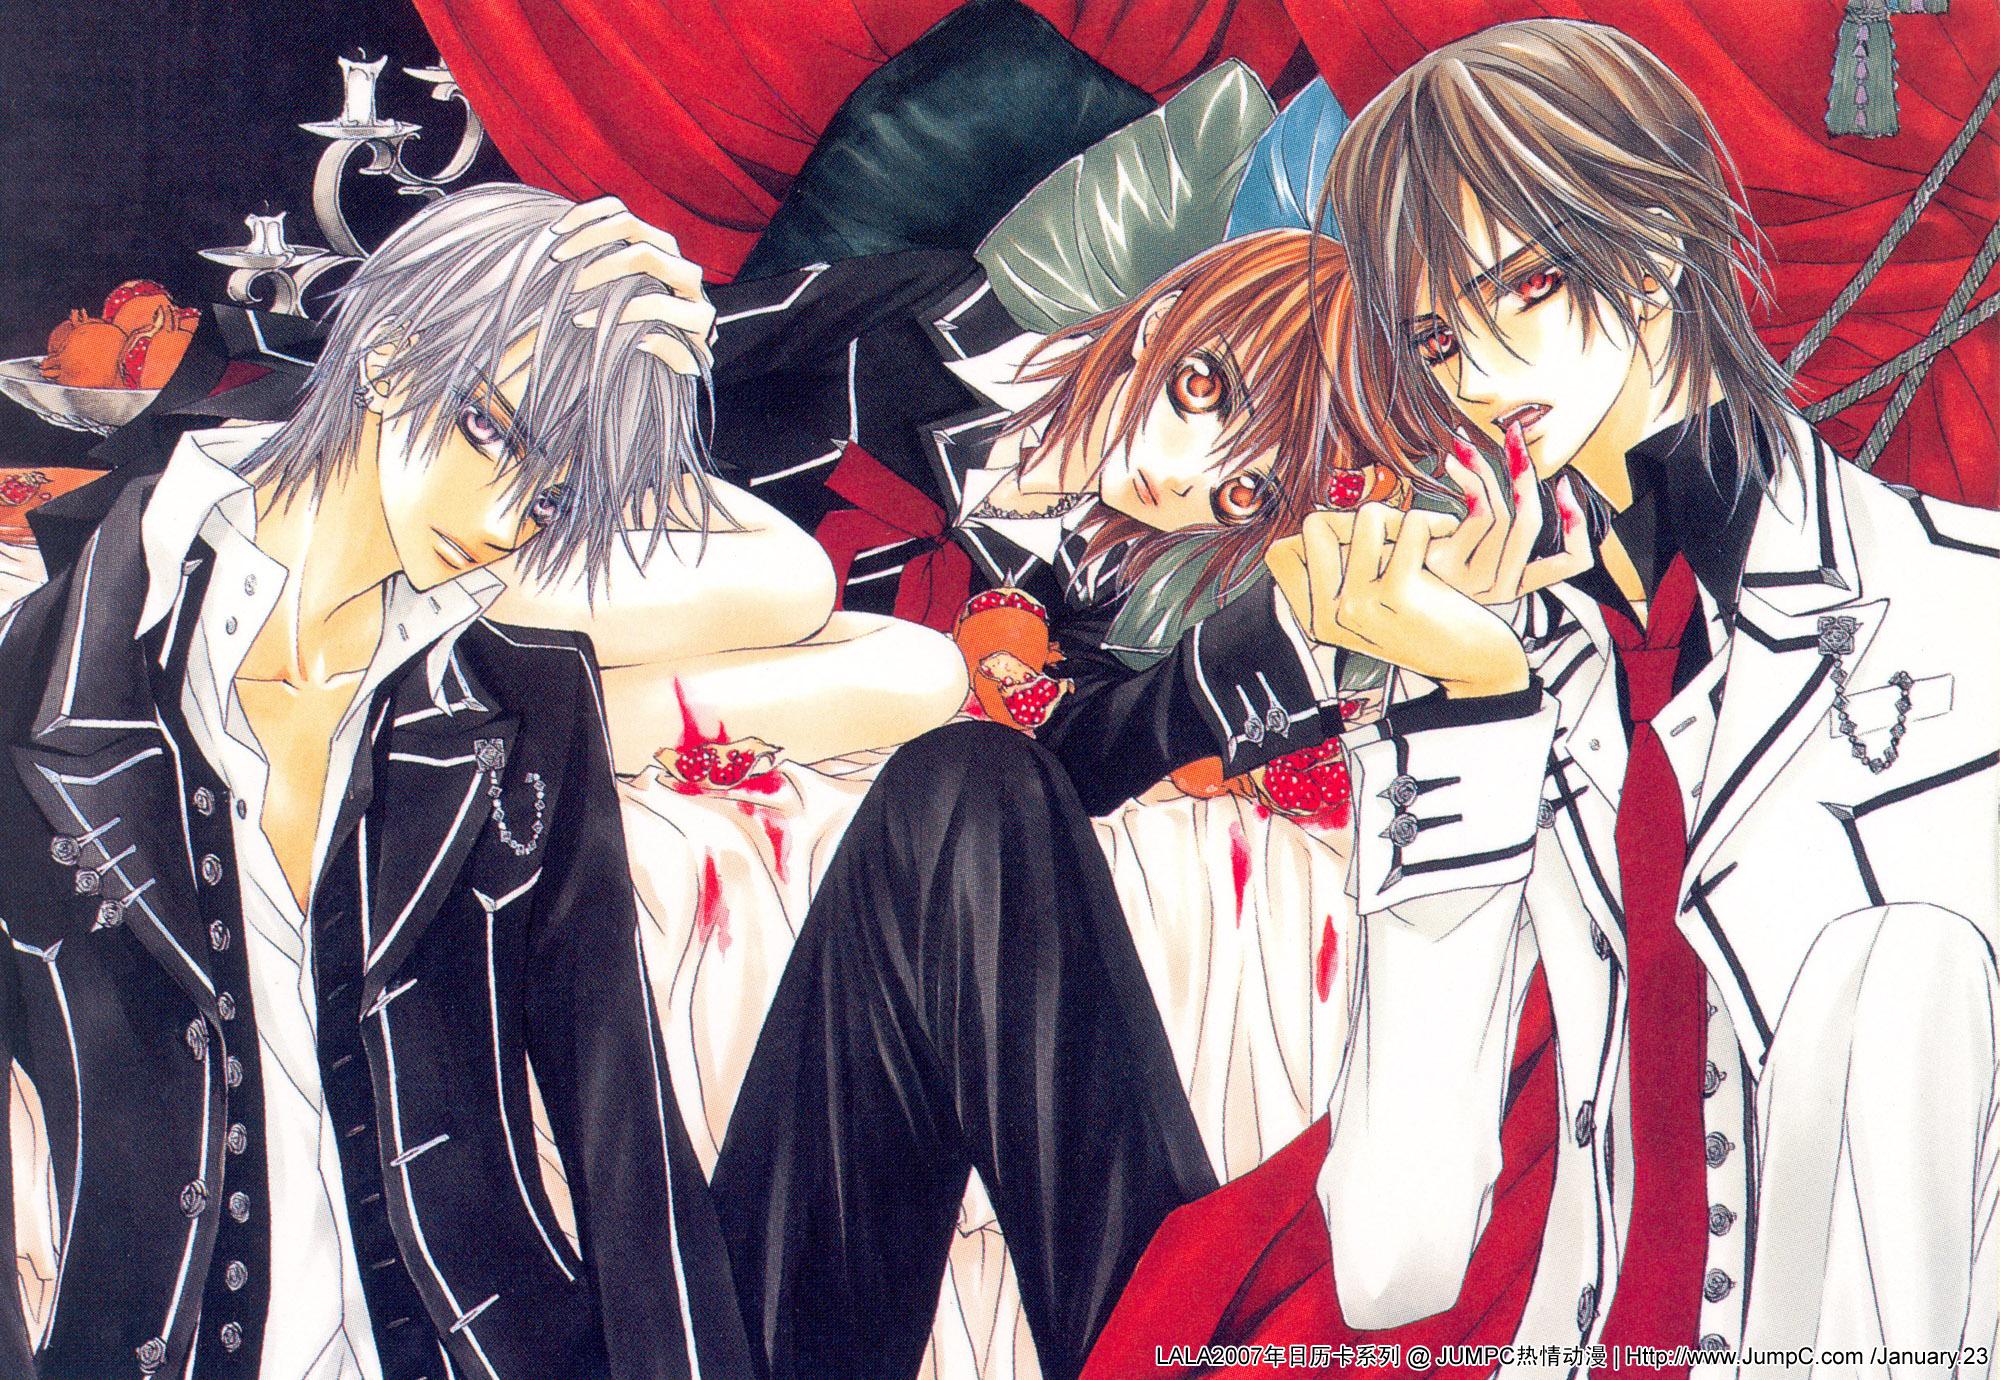 Zero, Yuki, & Kaname from Vampire Knight in stunning Anime wallpaper.